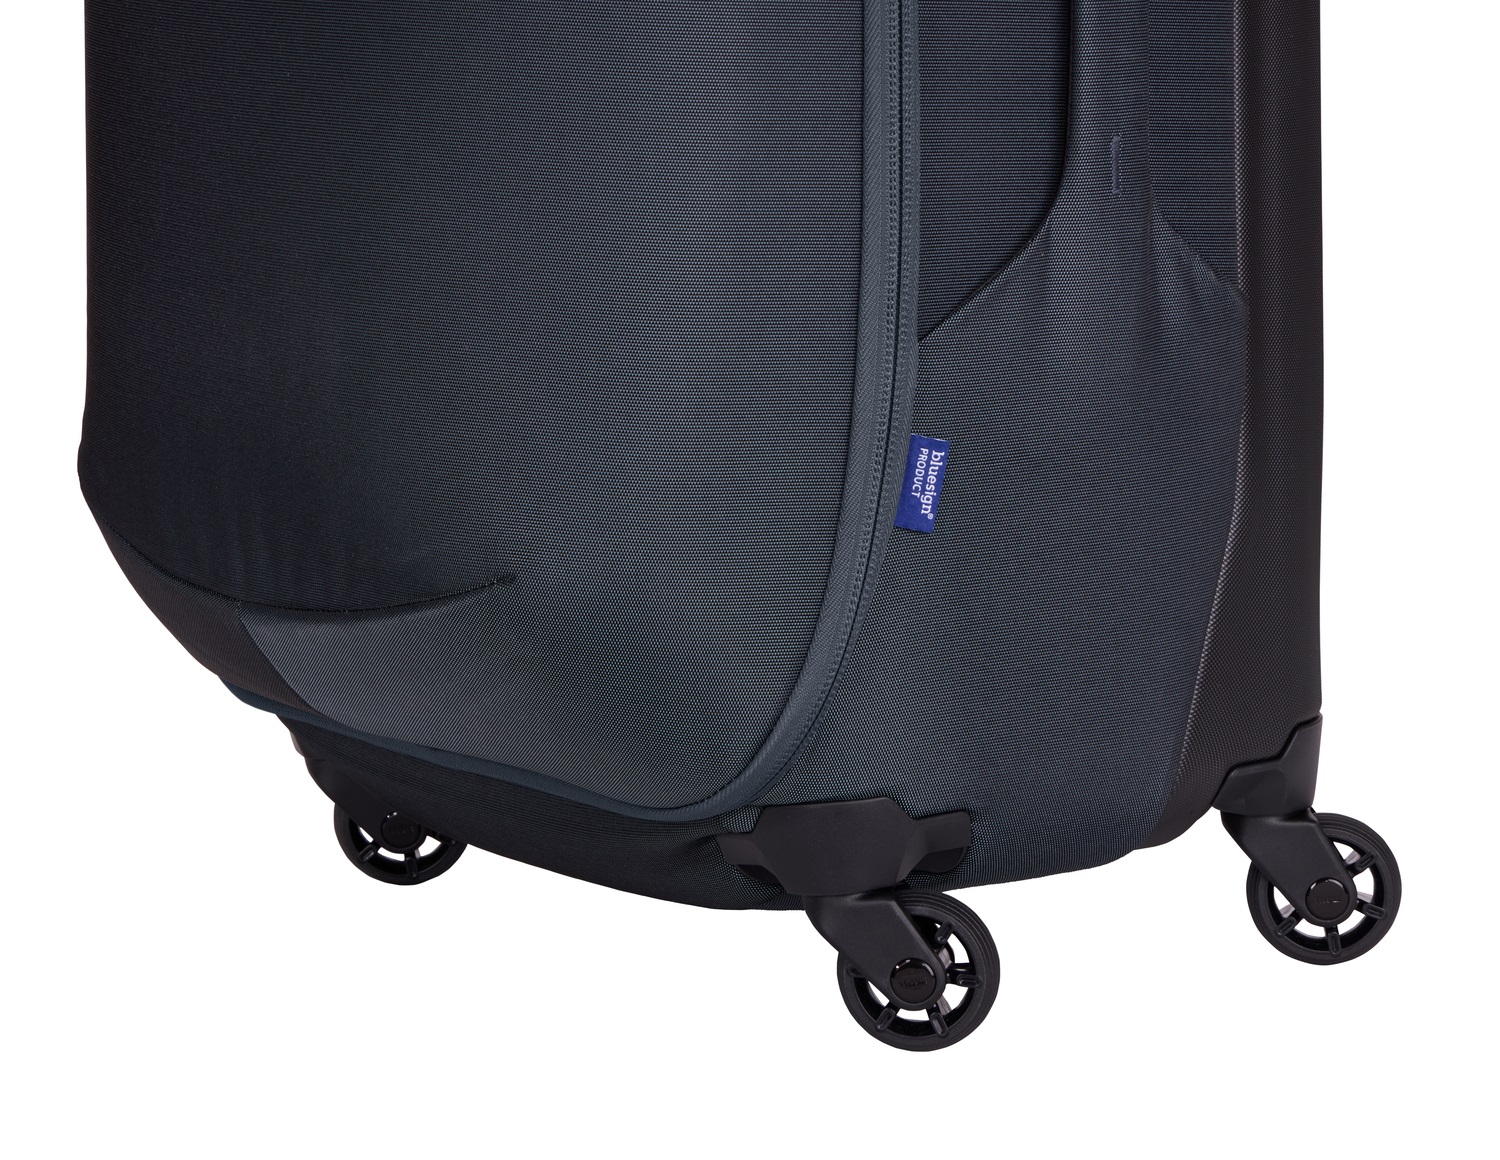 Thule Subterra 2 kofer s kotačima 68cm/65L za unos prtljage u zrakoplov - plavi